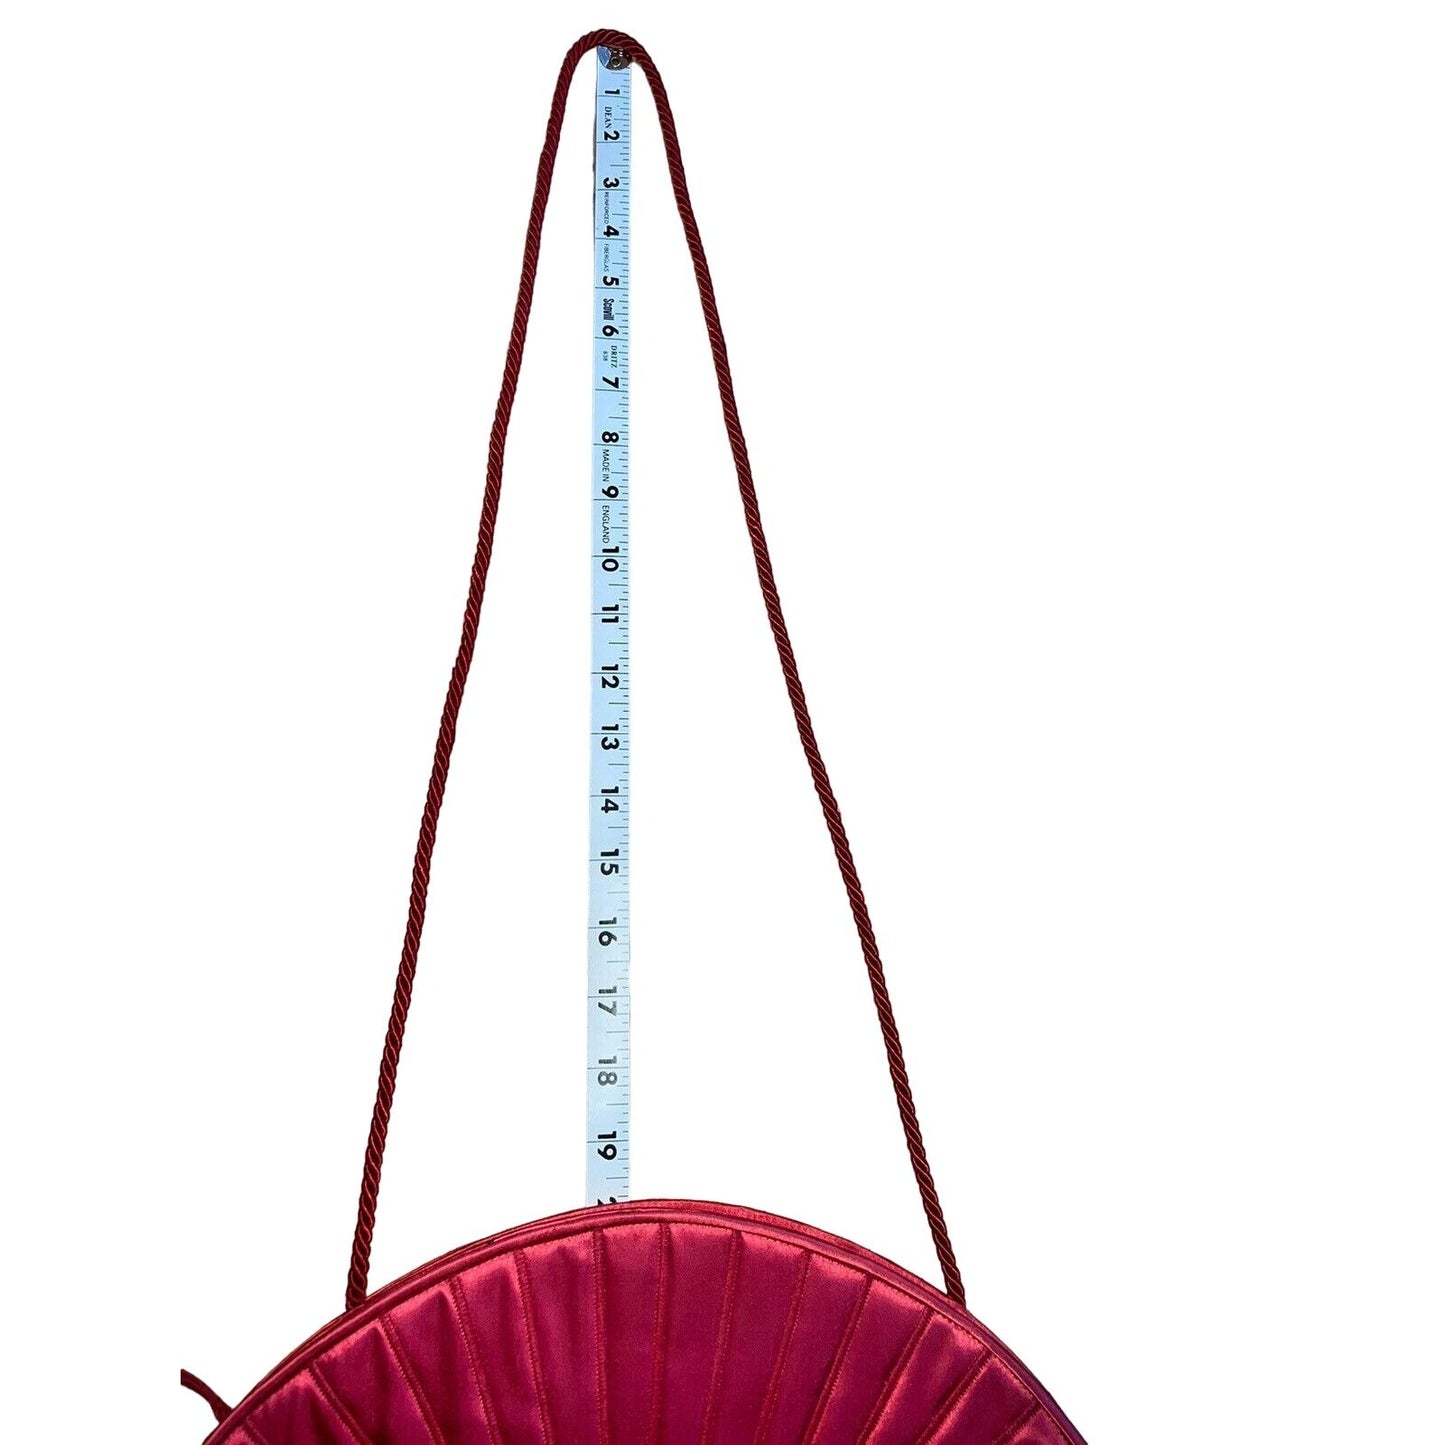 SOLD- Fendi SAS scarlet red fan shaped two-way purse